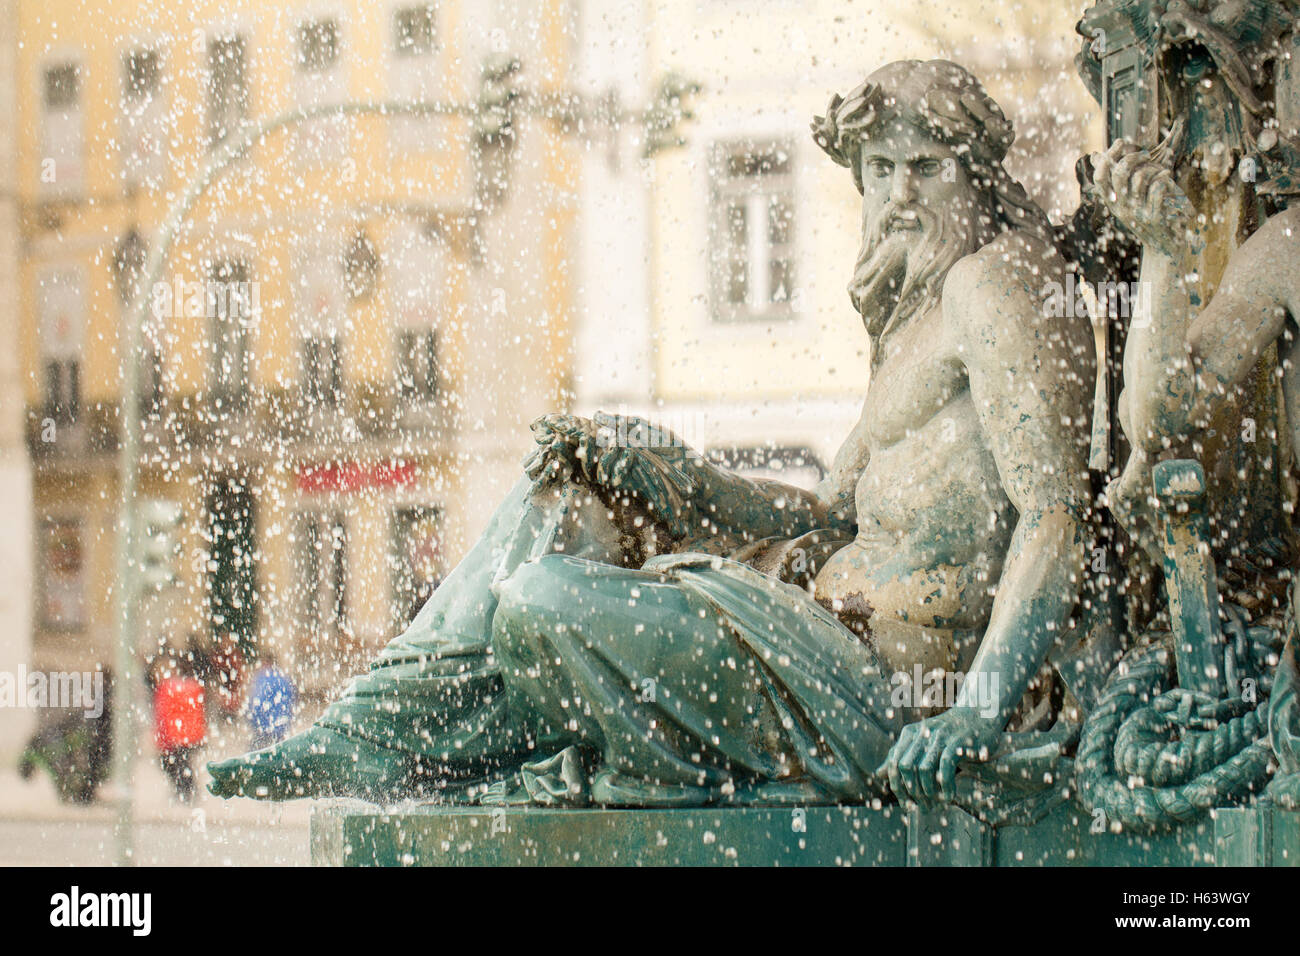 rossio square fountain in lisbon Stock Photo